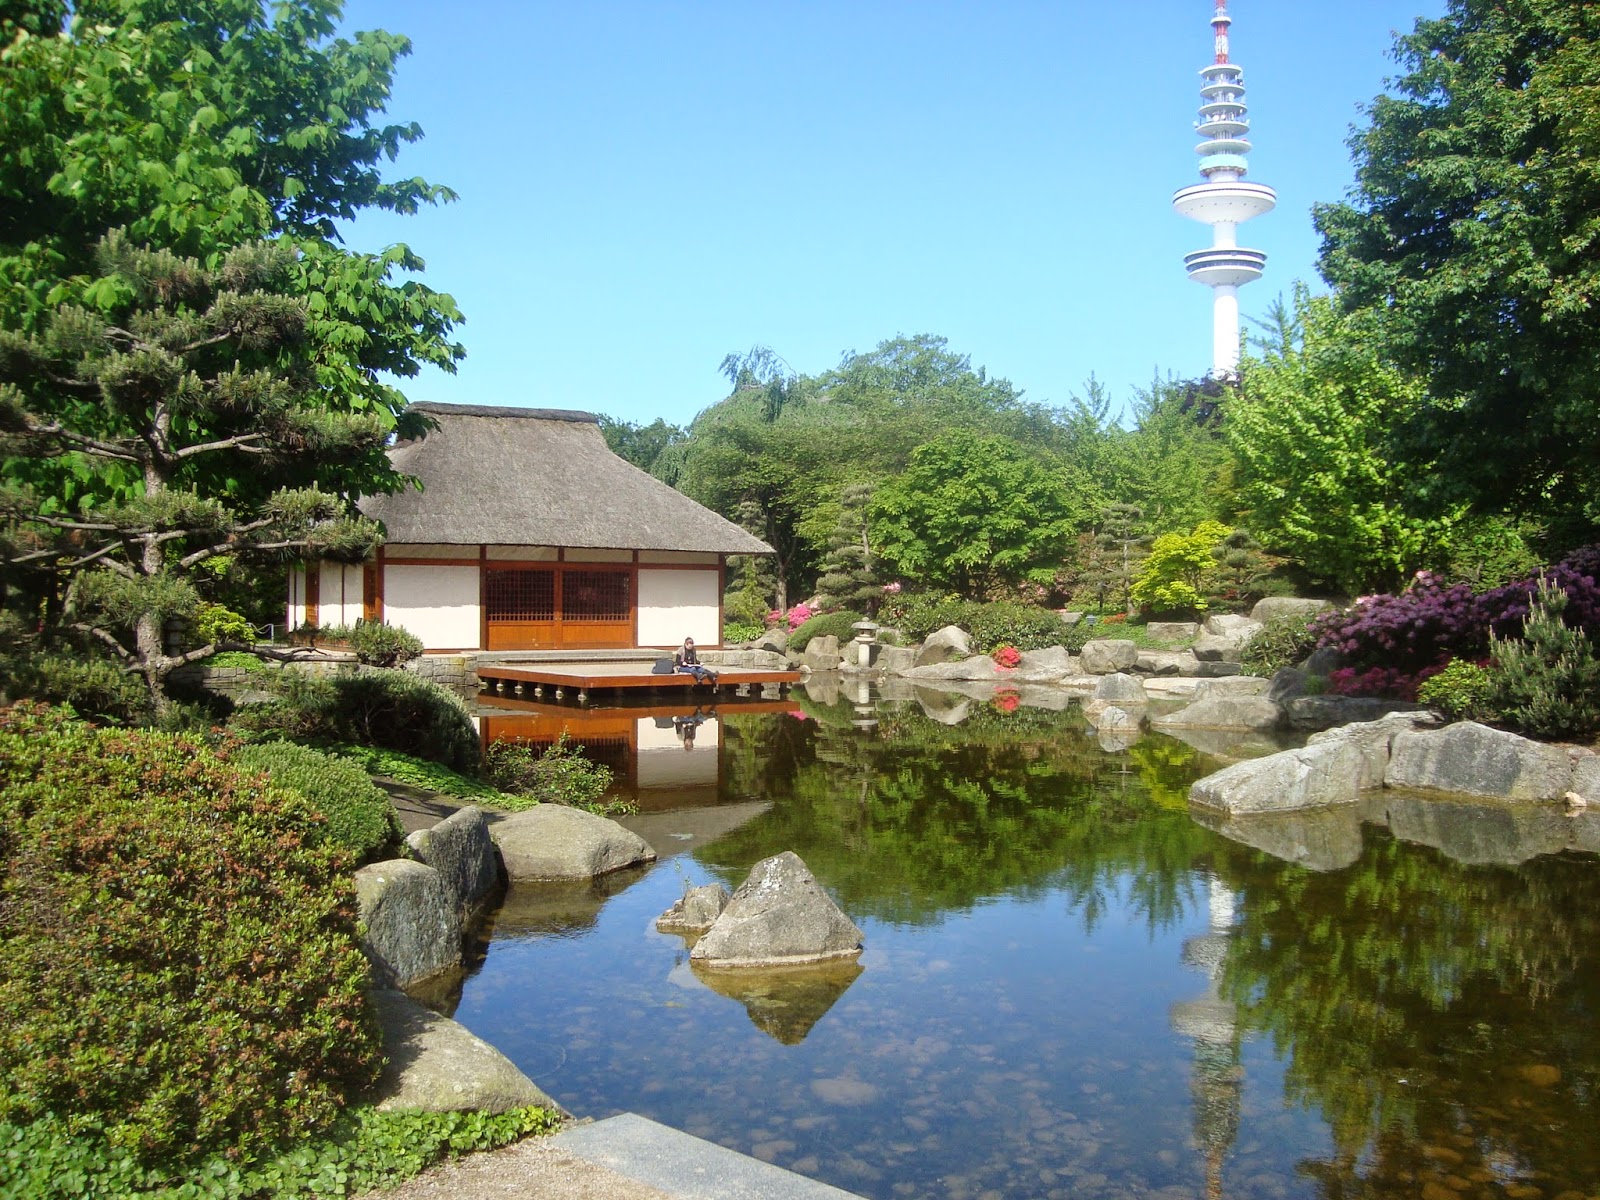  Ιαπωνικός κήπος